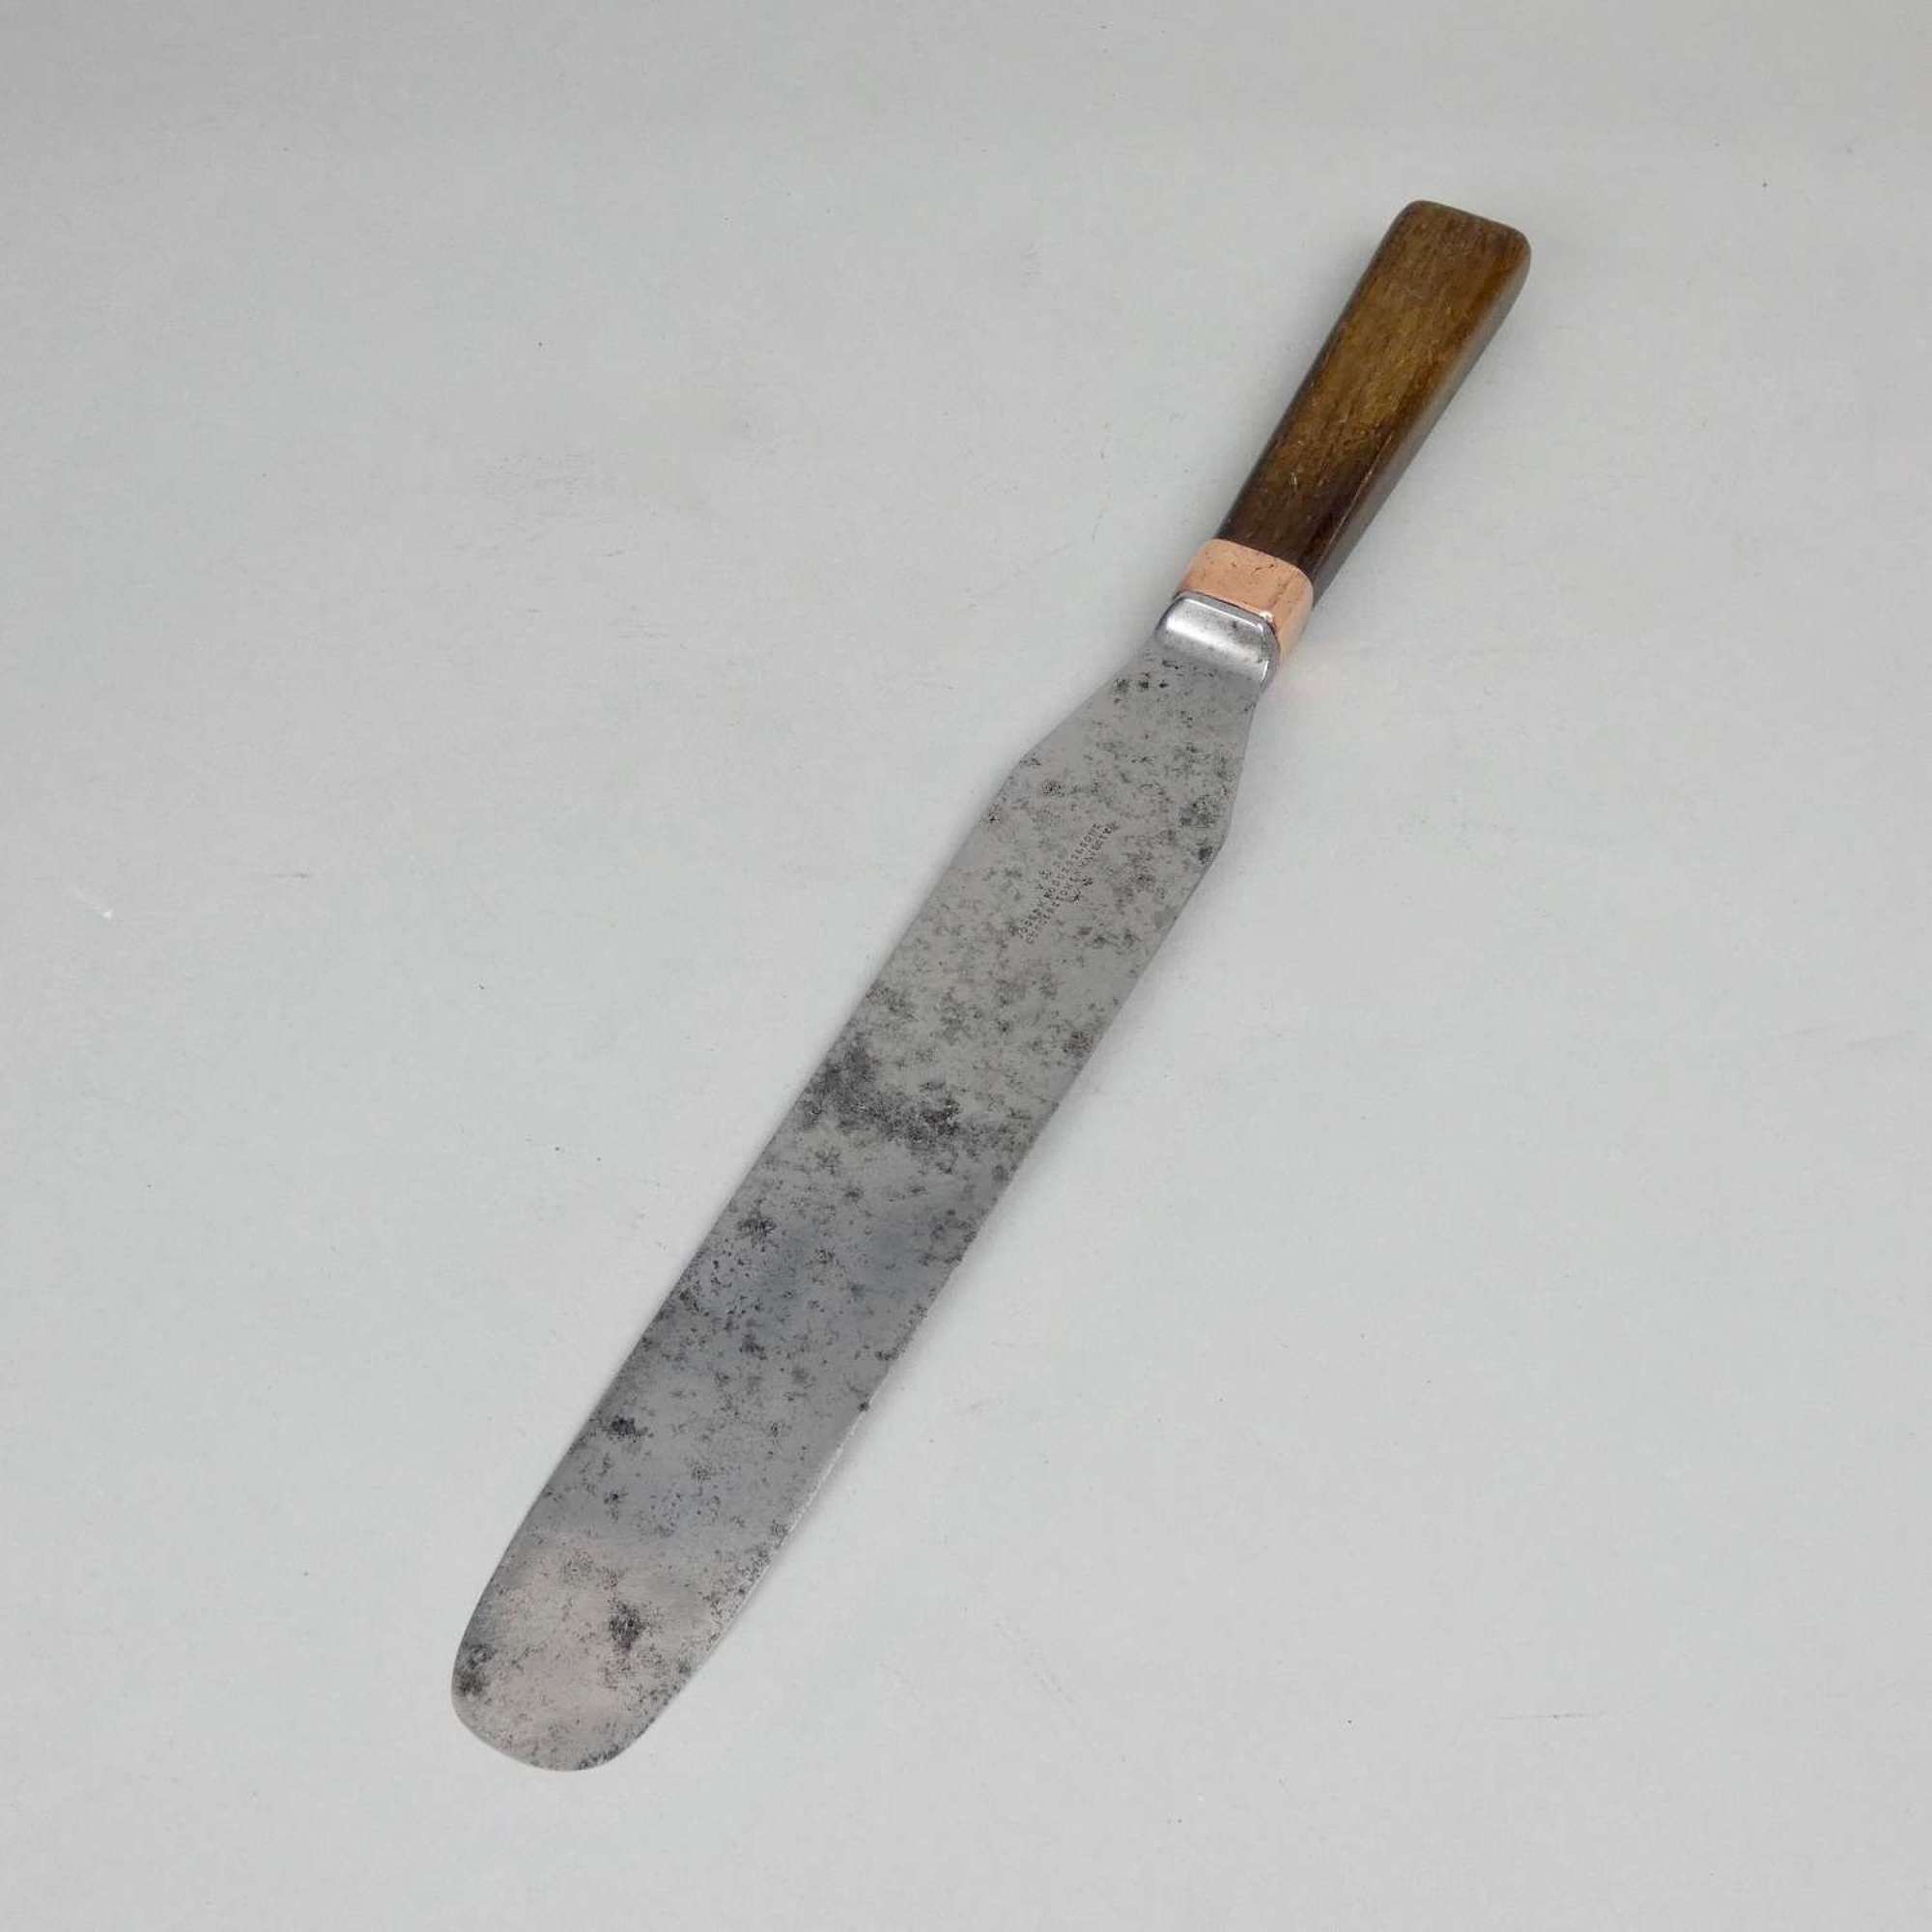 19th century, steel palette knife